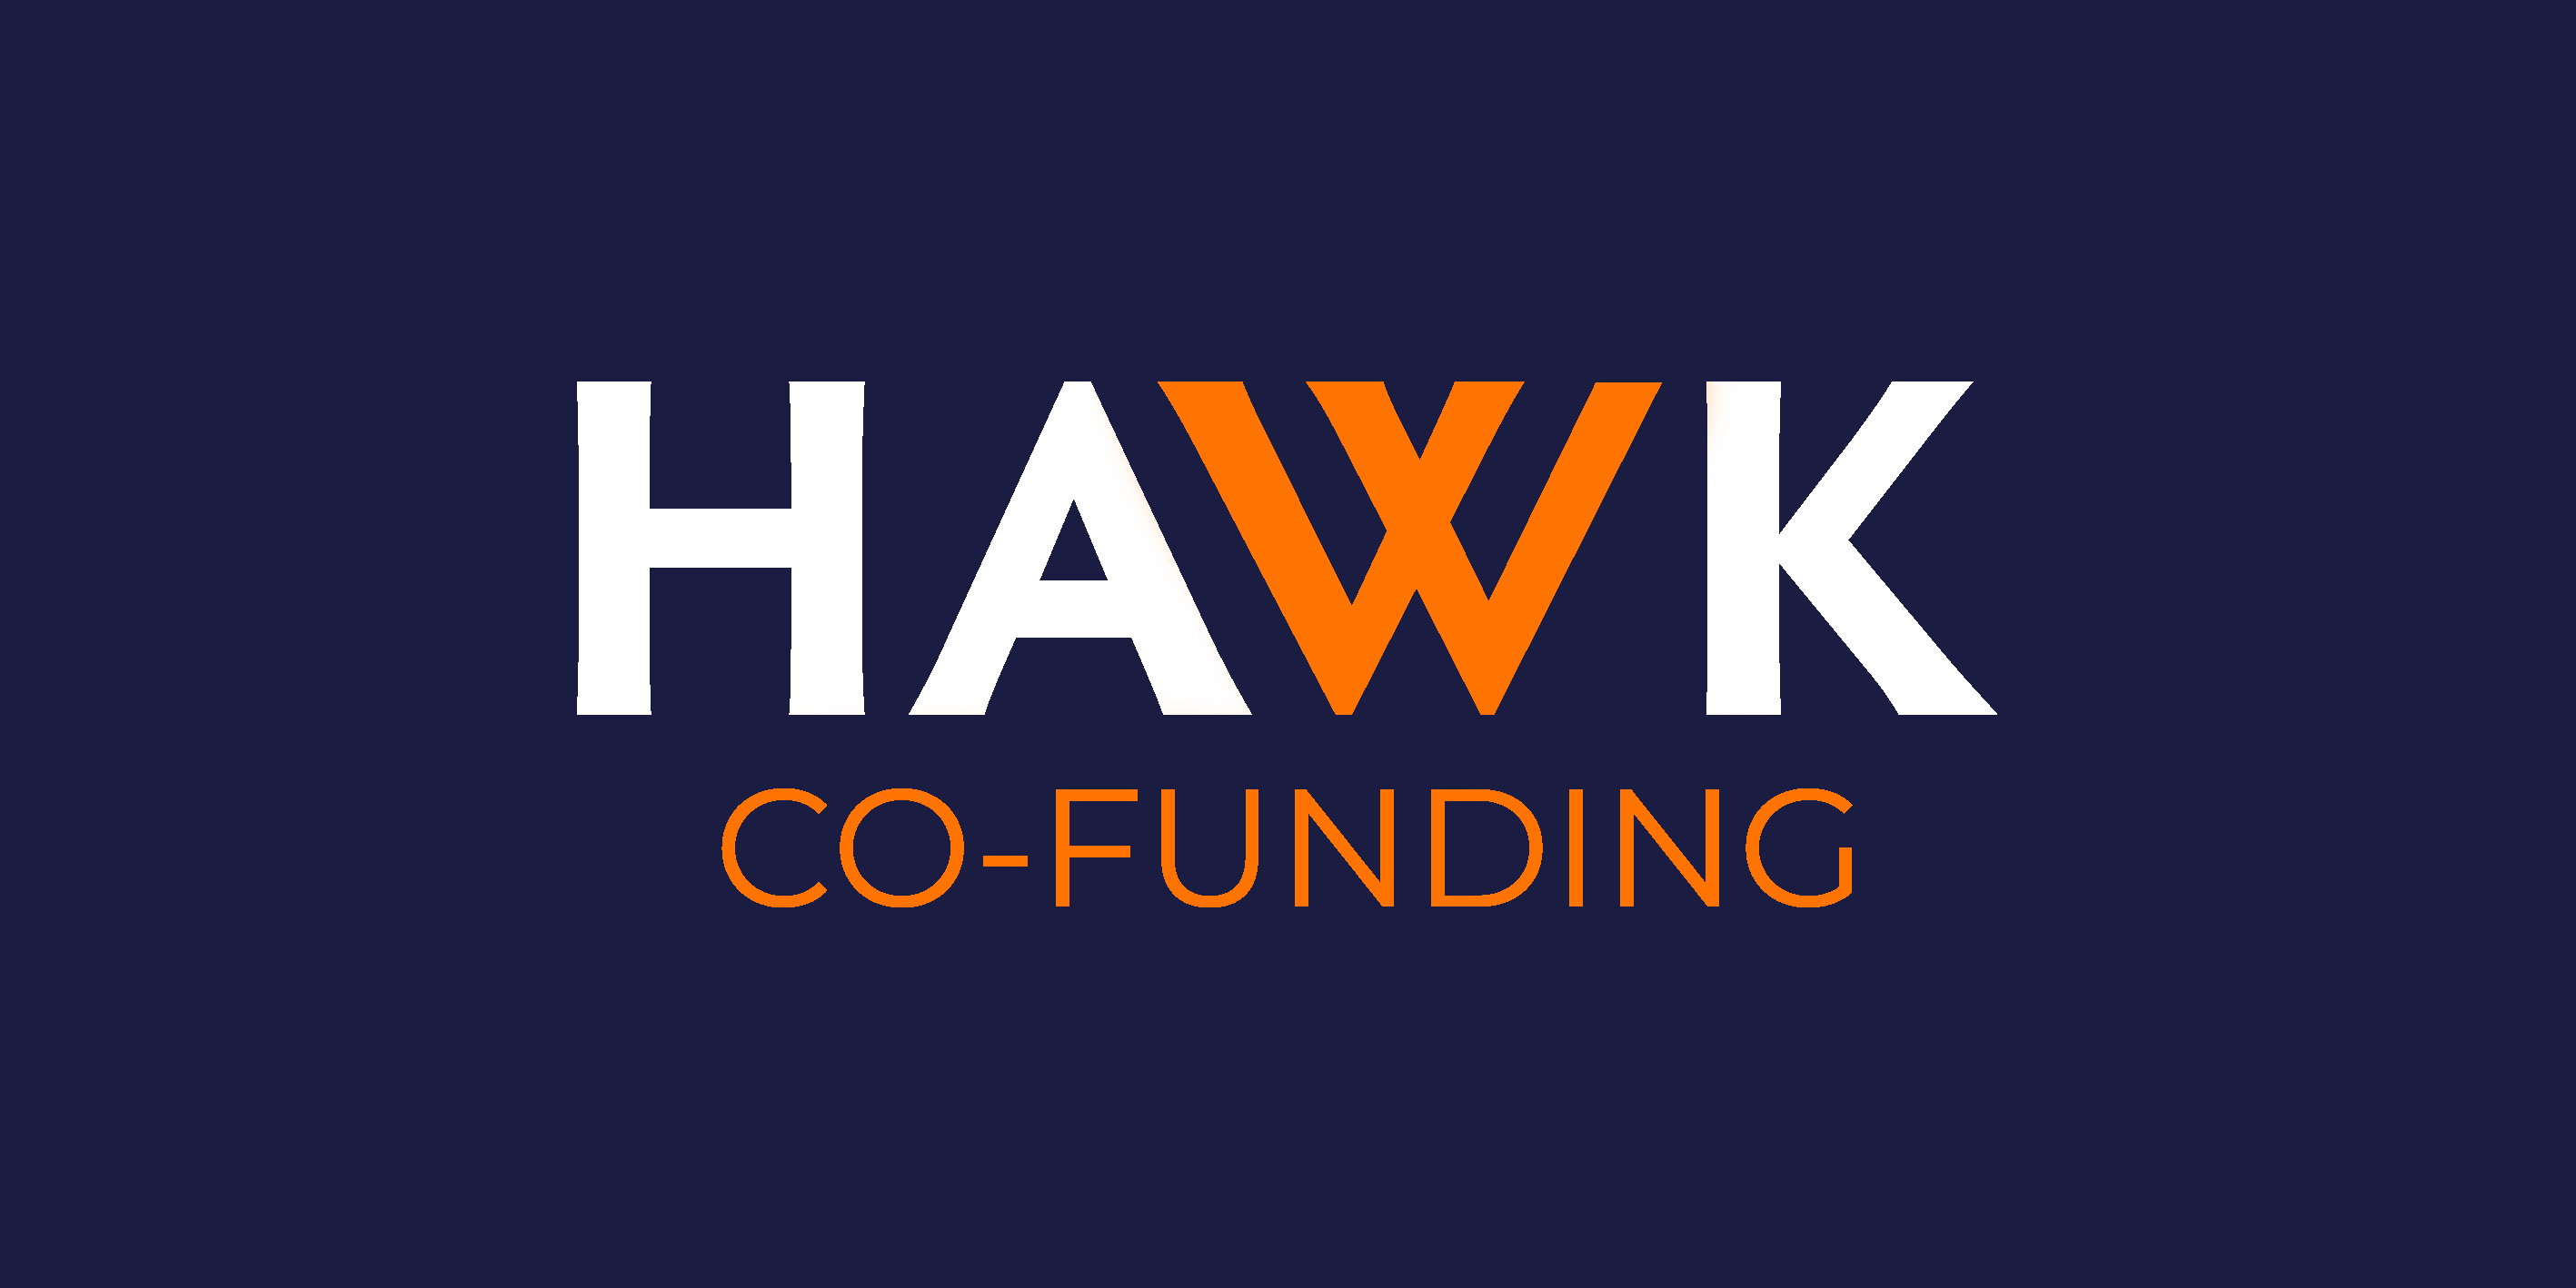 Hawk co-funding